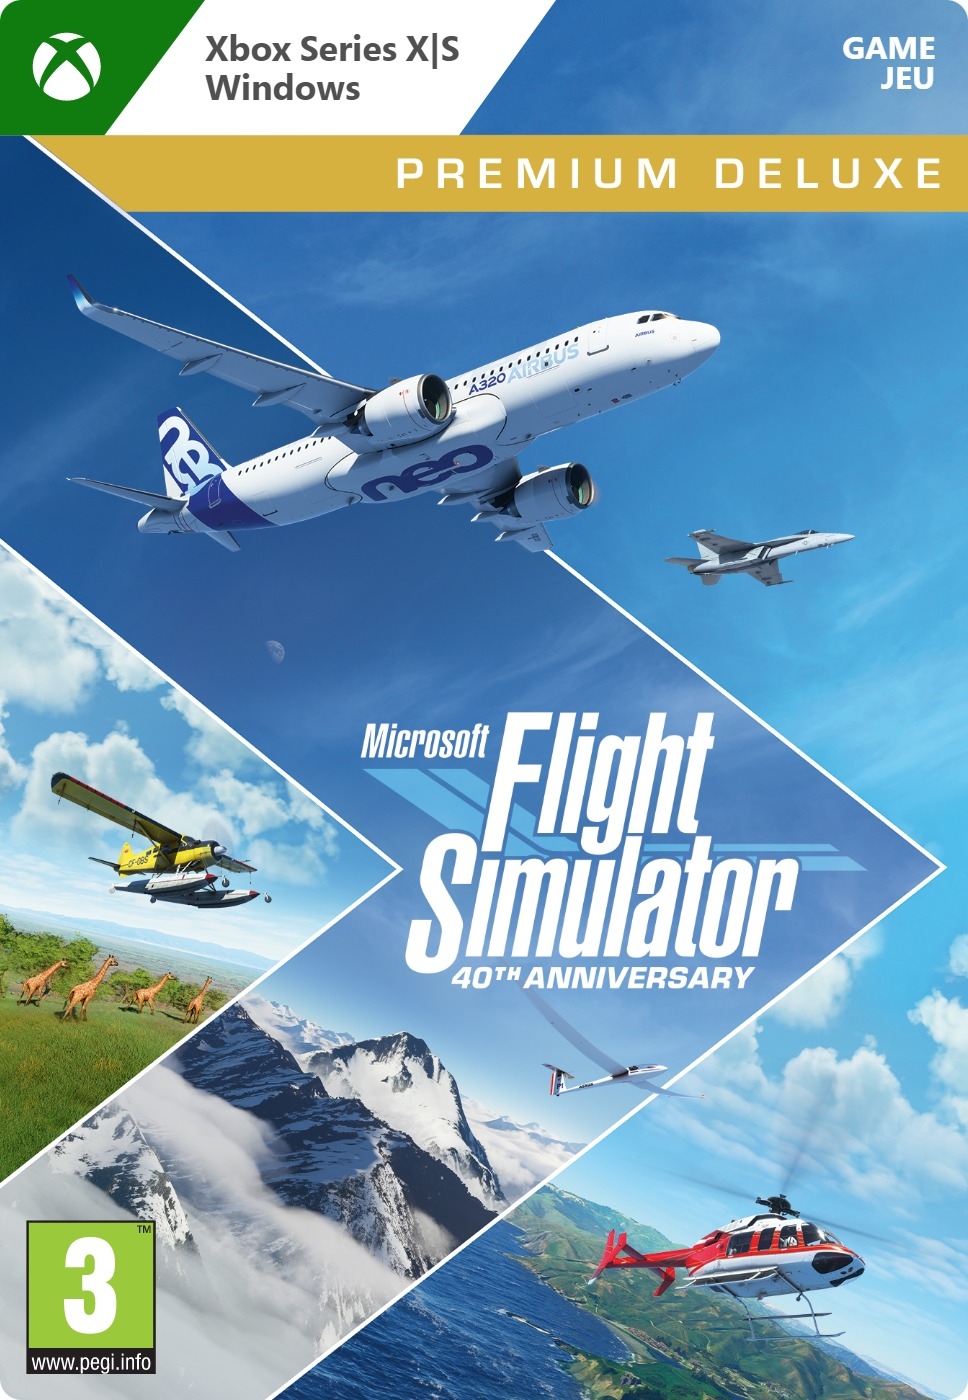 Microsoft Flight Simulator: 40th Anniversary Premium Deluxe Edition - Xbox Series X|S/One/PC (Digitale Game) XboxLiveKaarten.nl